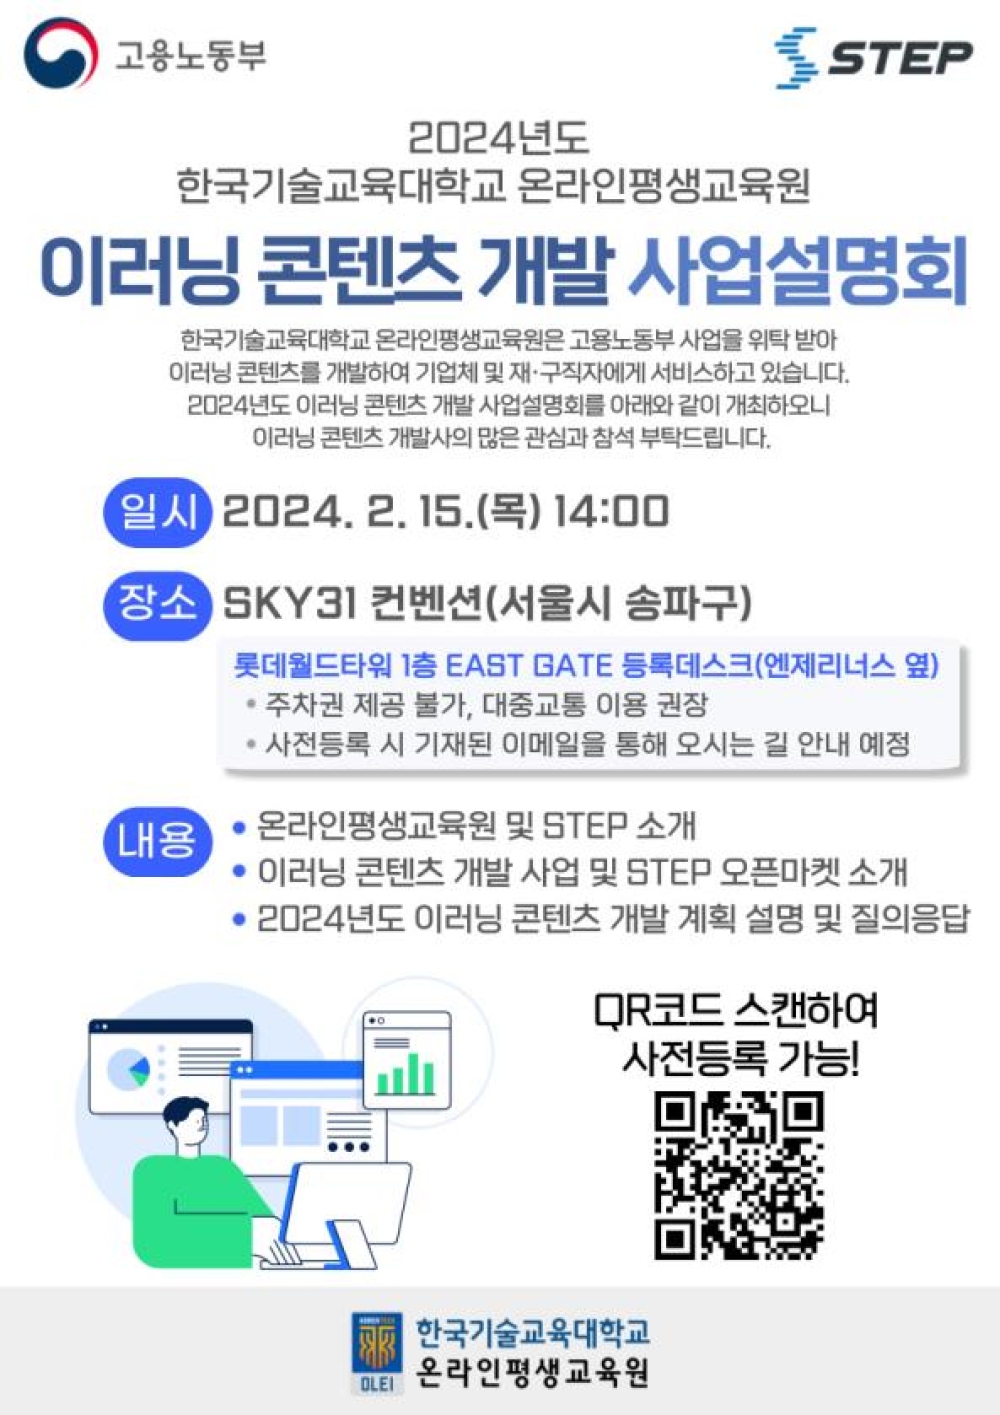 [데일리안] 한기대 온라인평생교육원, 2024년도 STEP 콘텐츠 개발 사업설명회 개최